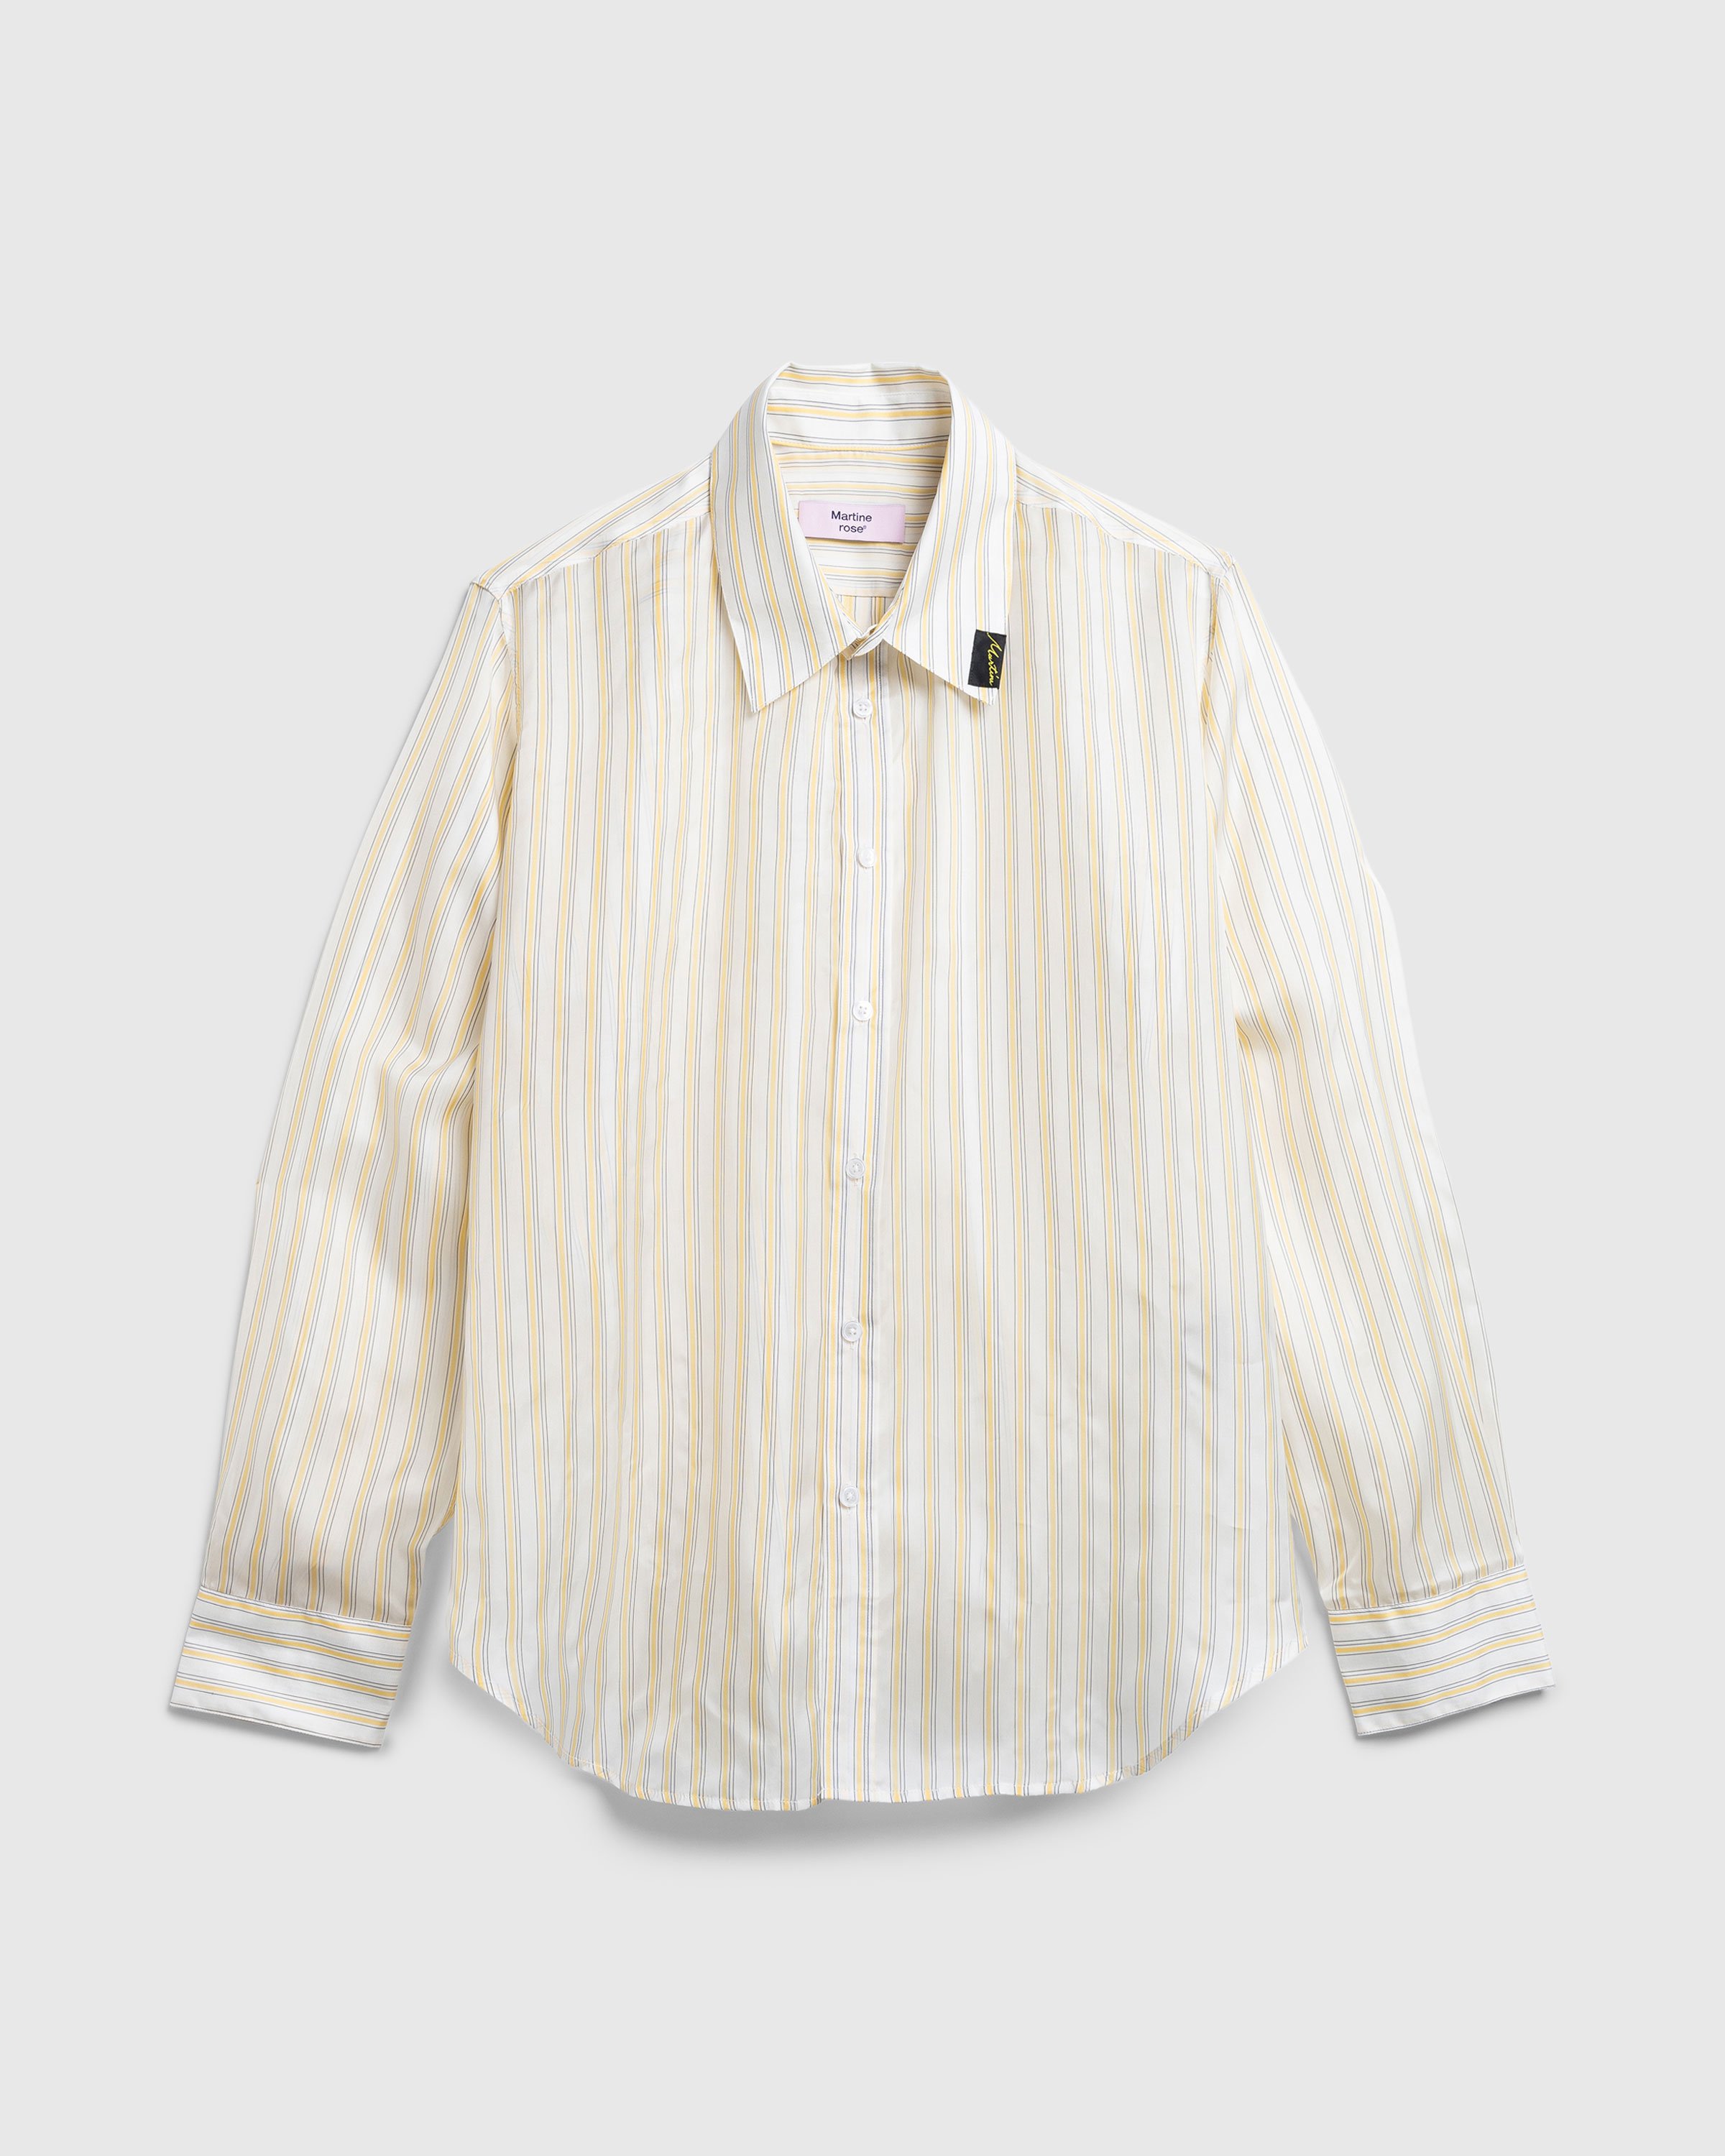 Martine Rose - Classic Shirt Yellow/White Stripe - Clothing - Yellow - Image 1